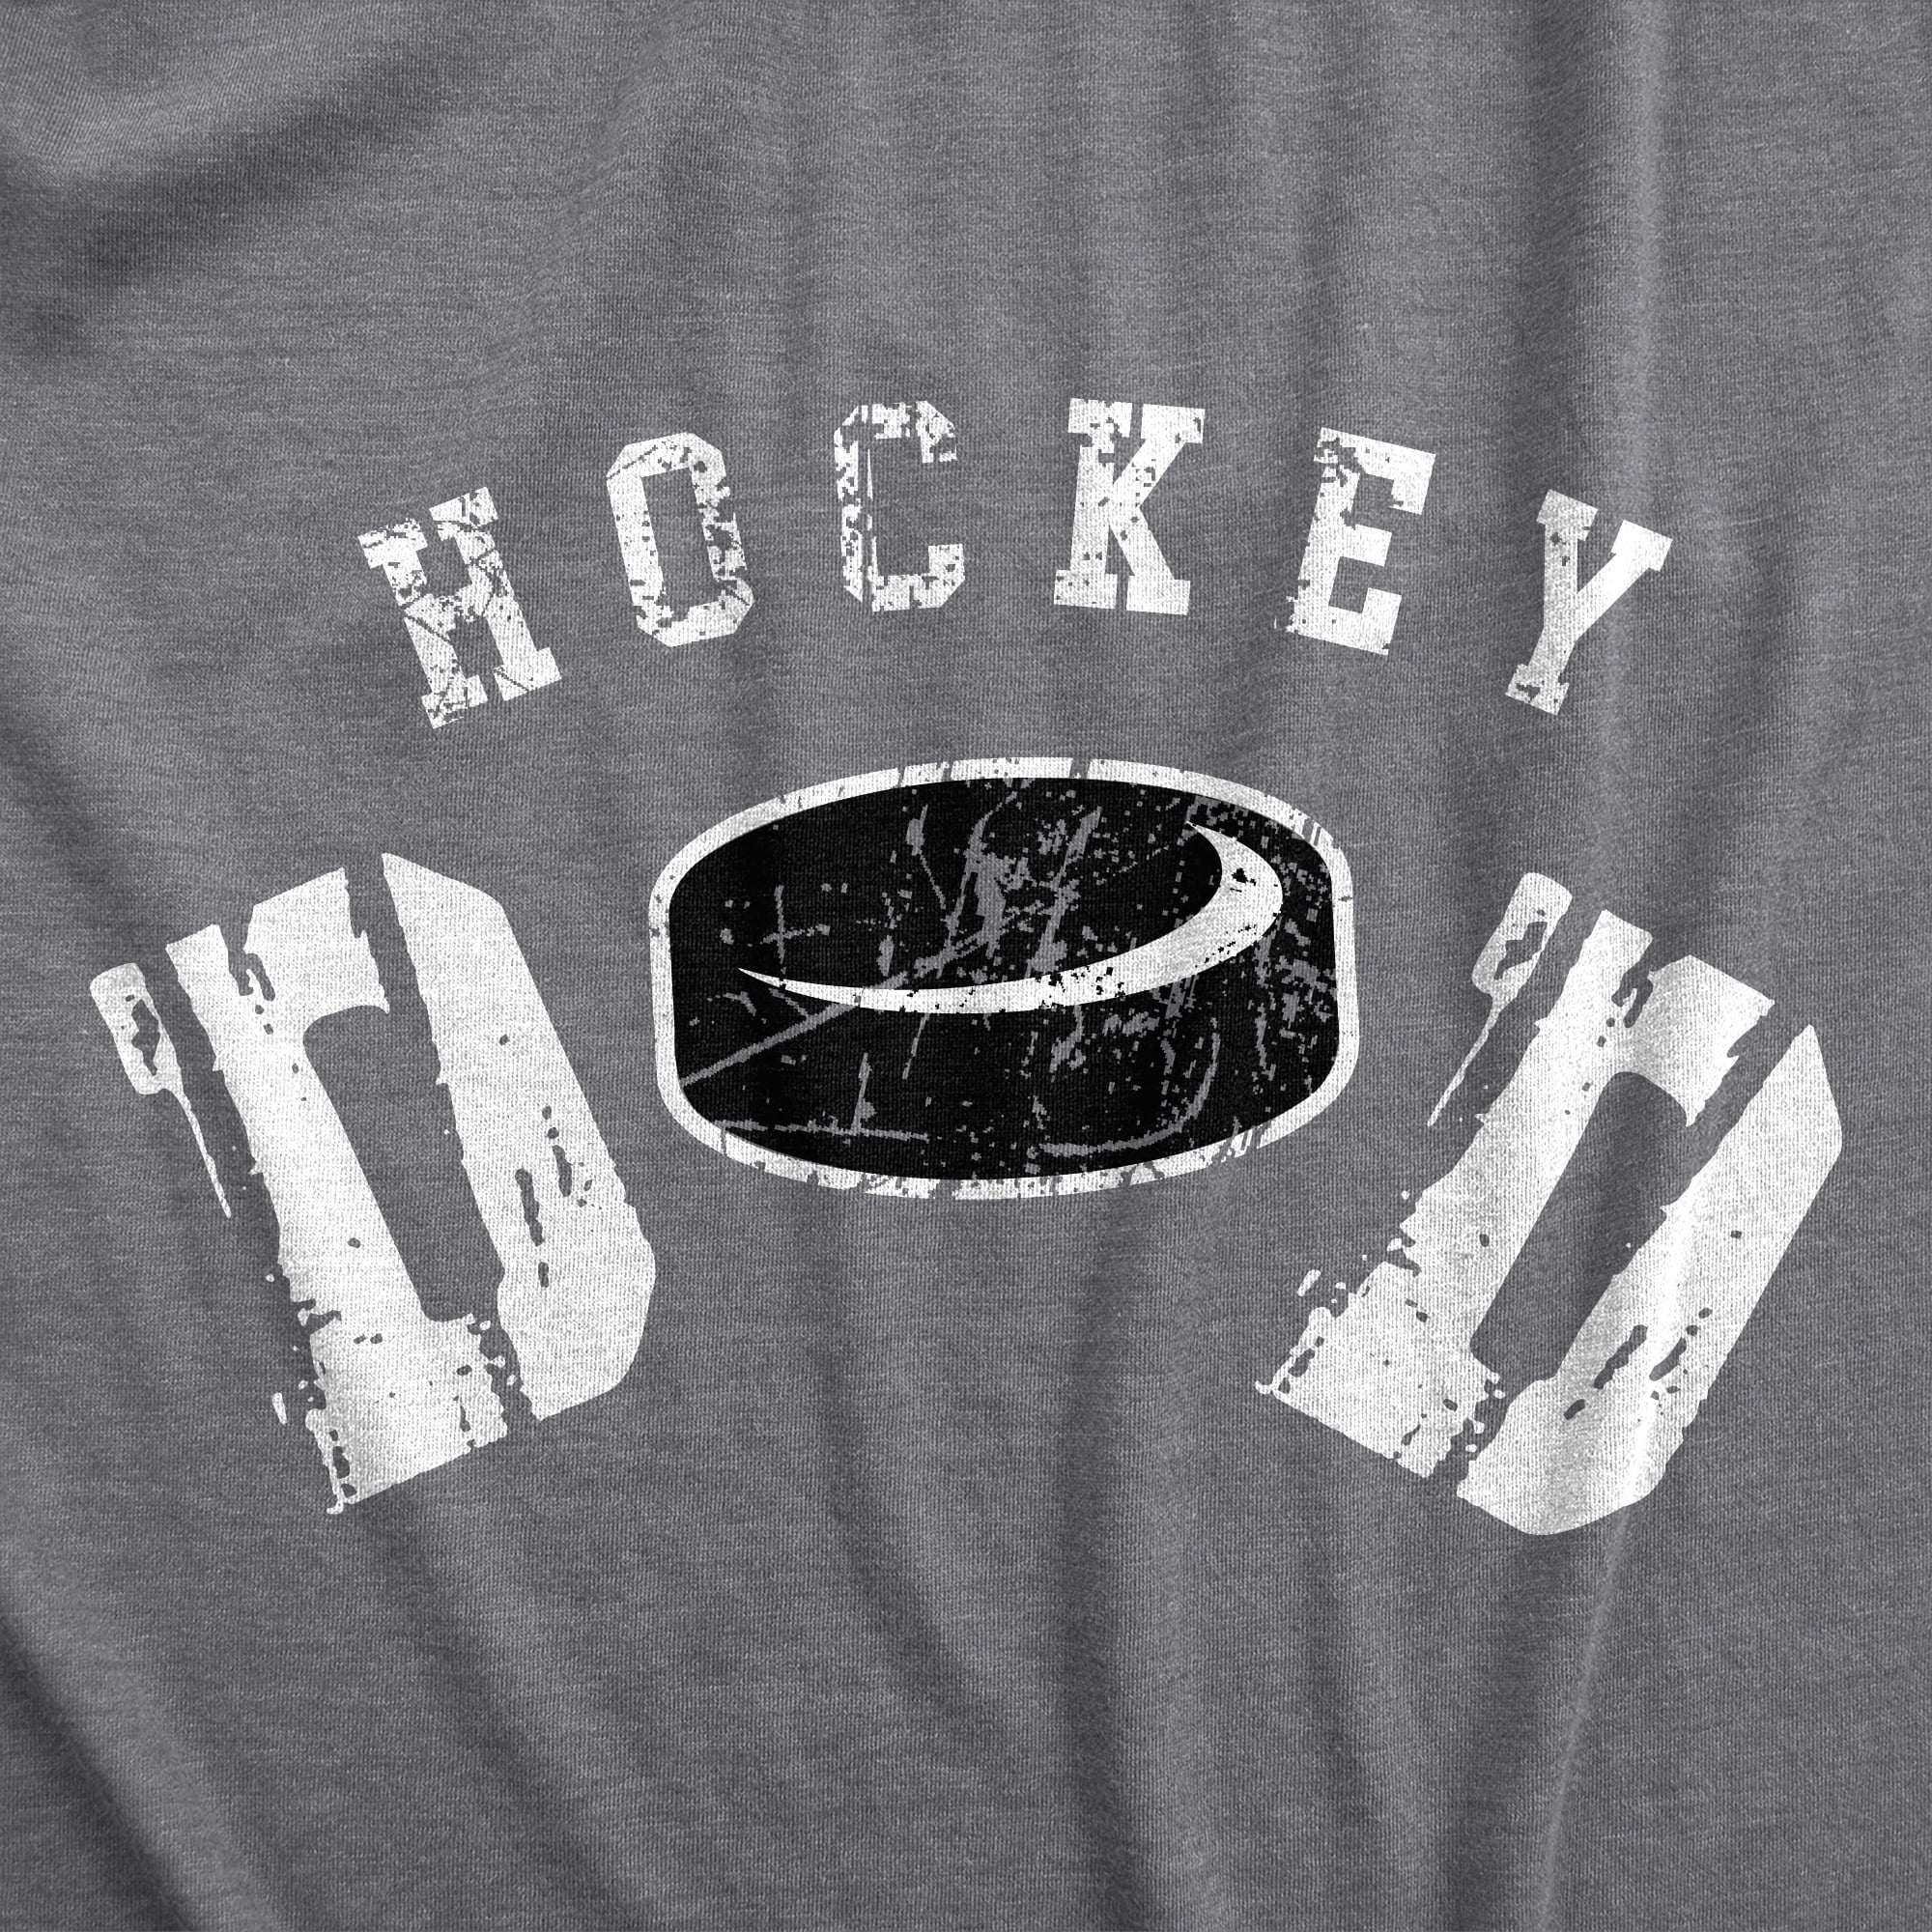 NHL Men's T-Shirt - Black - L